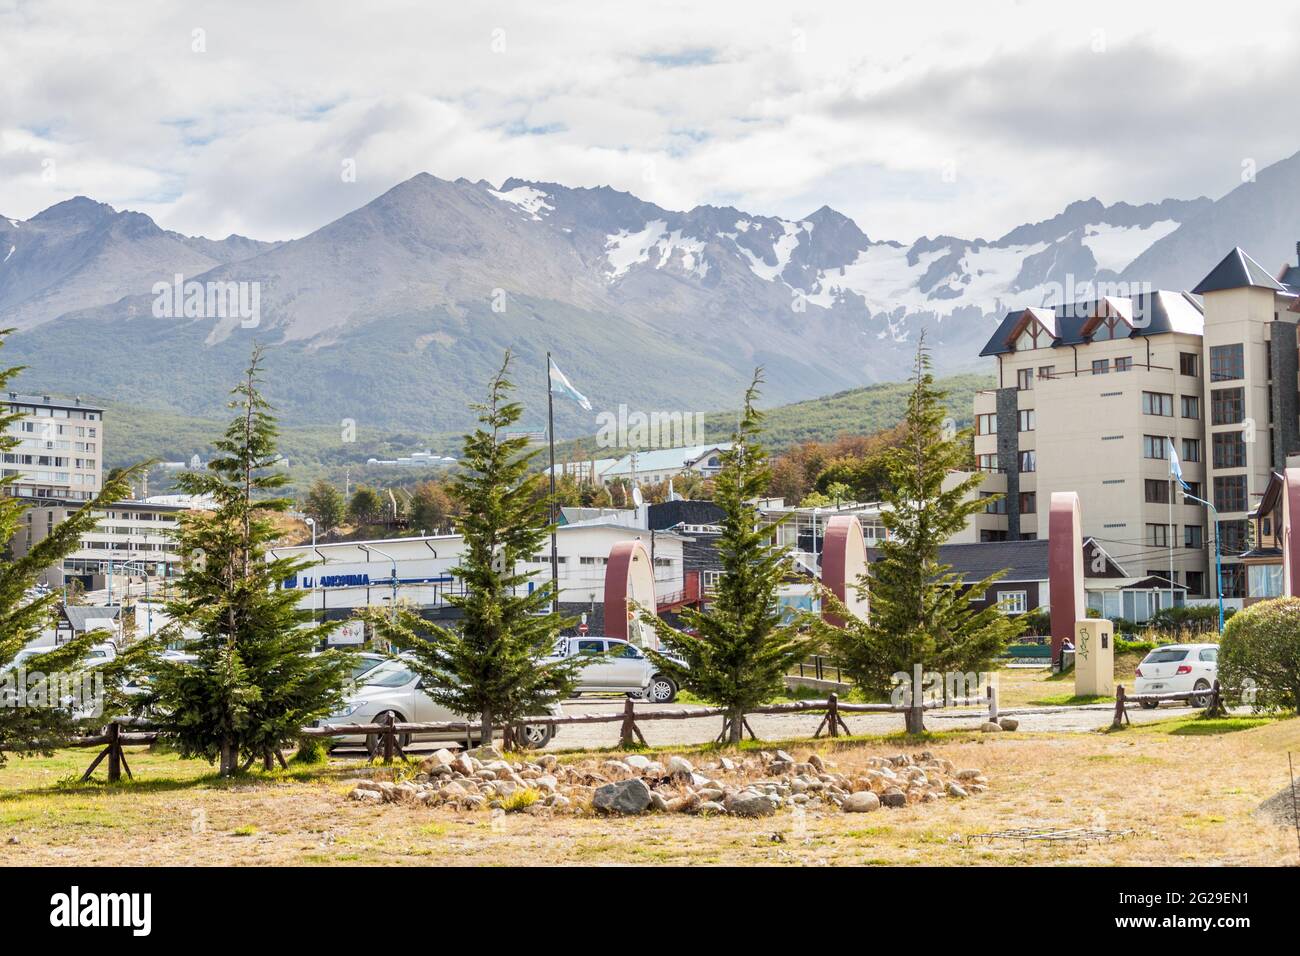 USHUAIA, ARGENTINIEN - 6. MÄRZ 2015: Gebäude von Ushuaia mit Martial Mountains, Feuerland, Argentinien Stockfoto